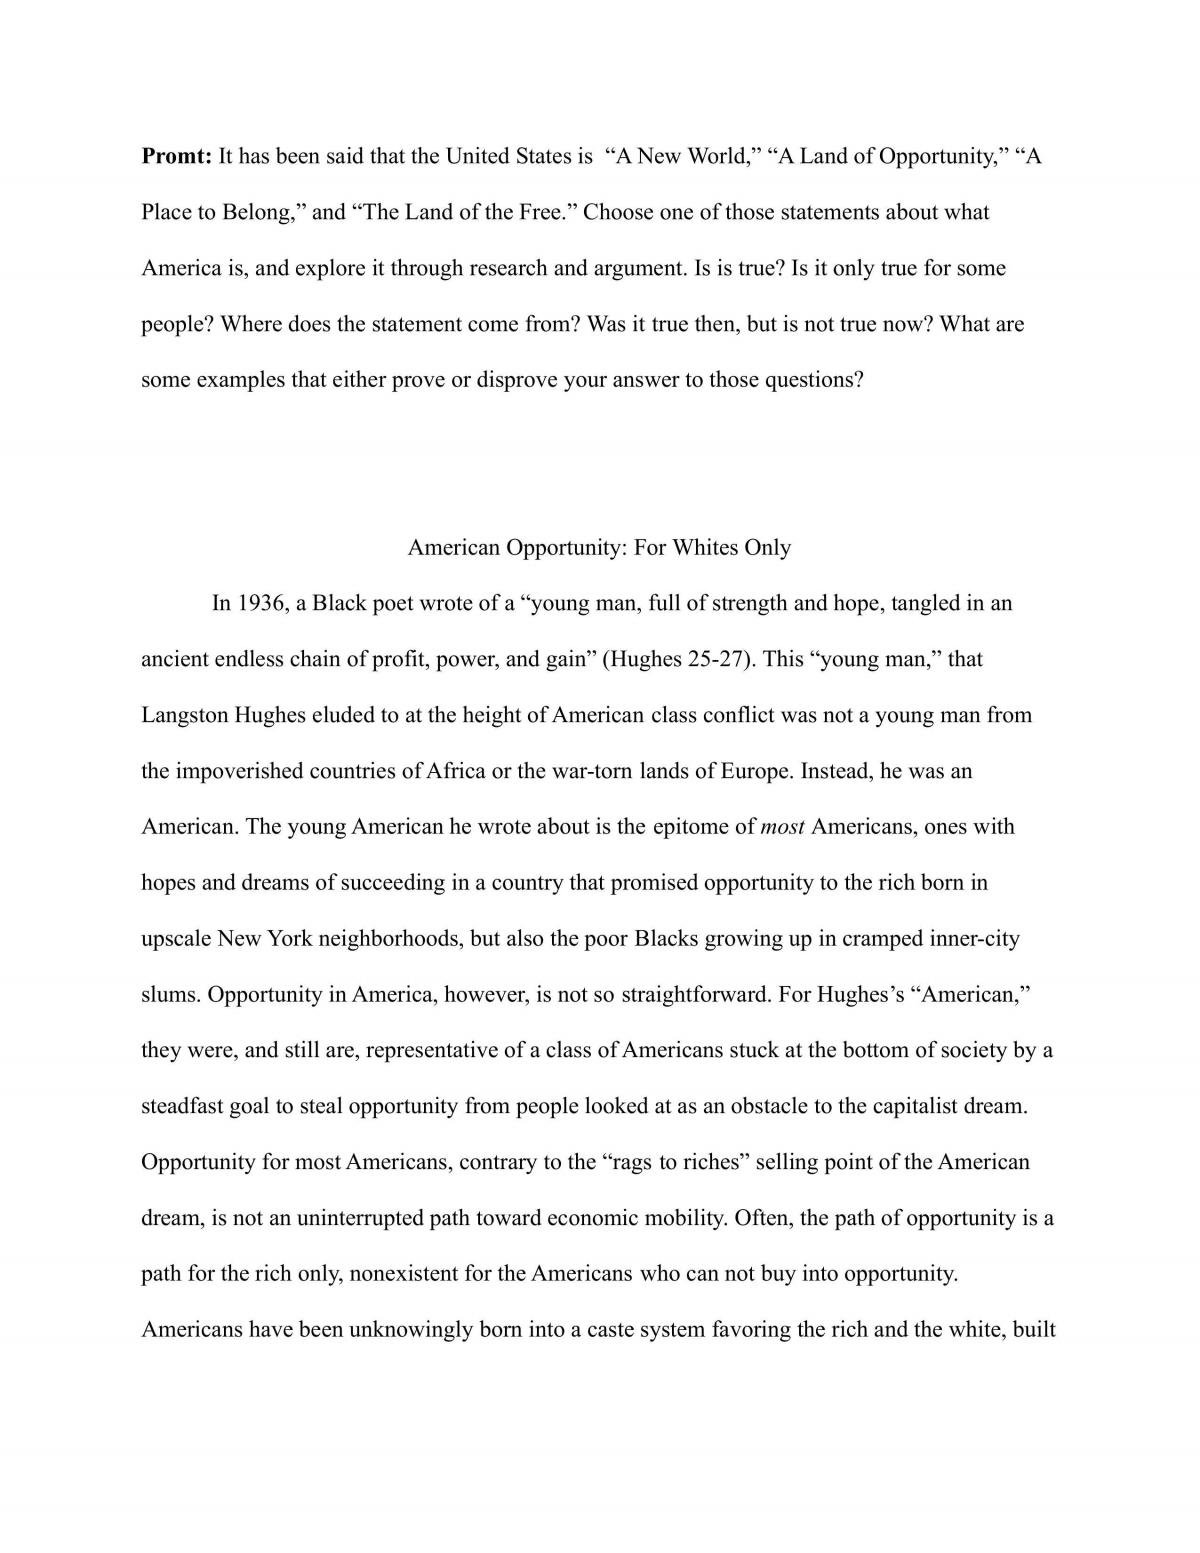 ap lang argument essay thesis statement